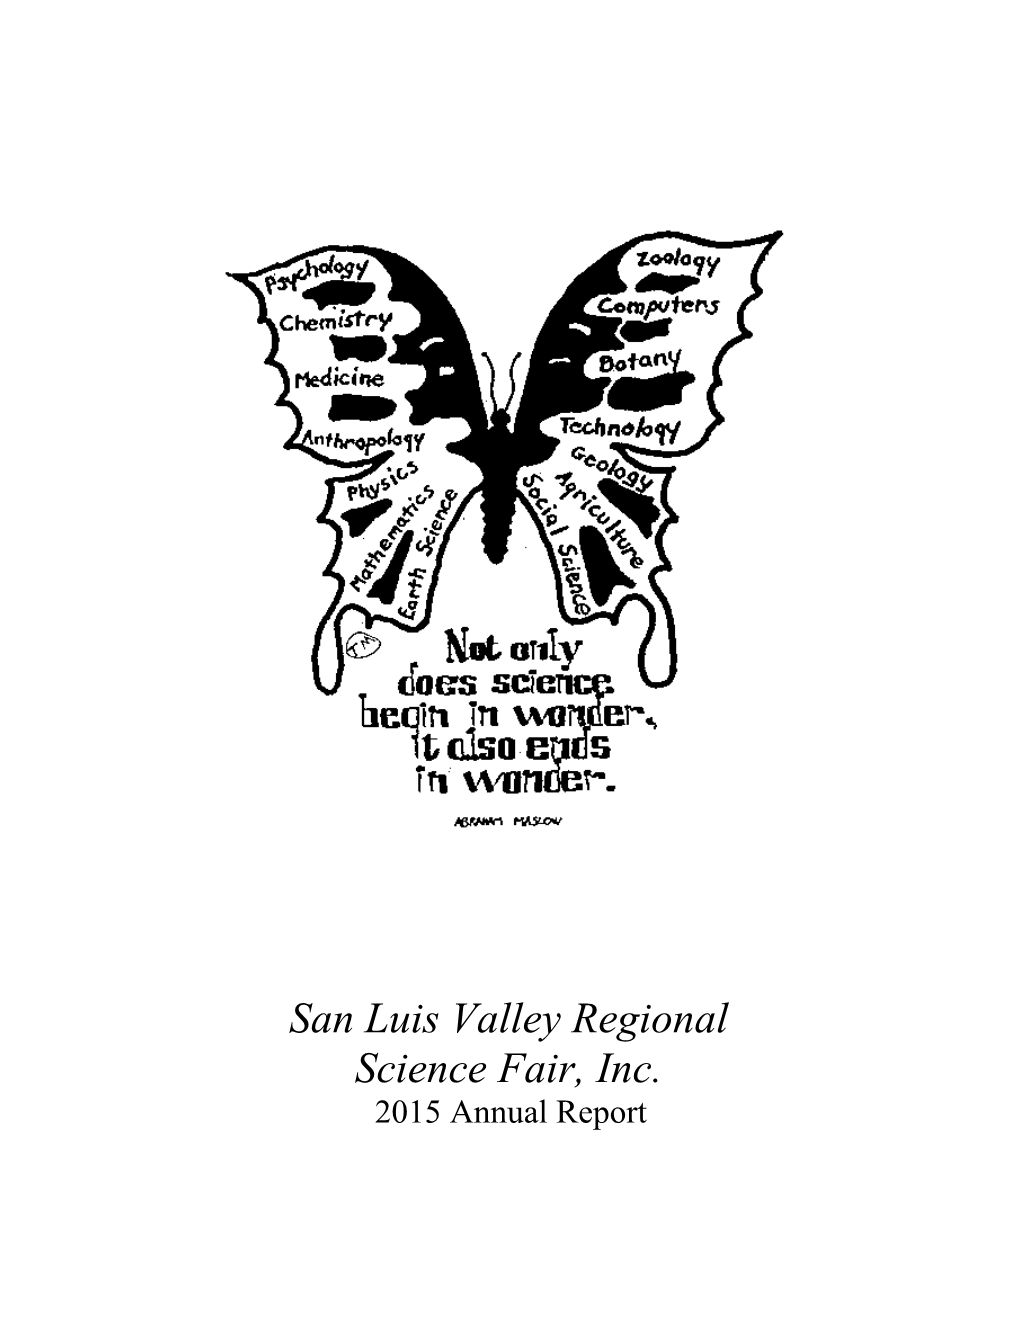 San Luis Valley Regional Science Fair